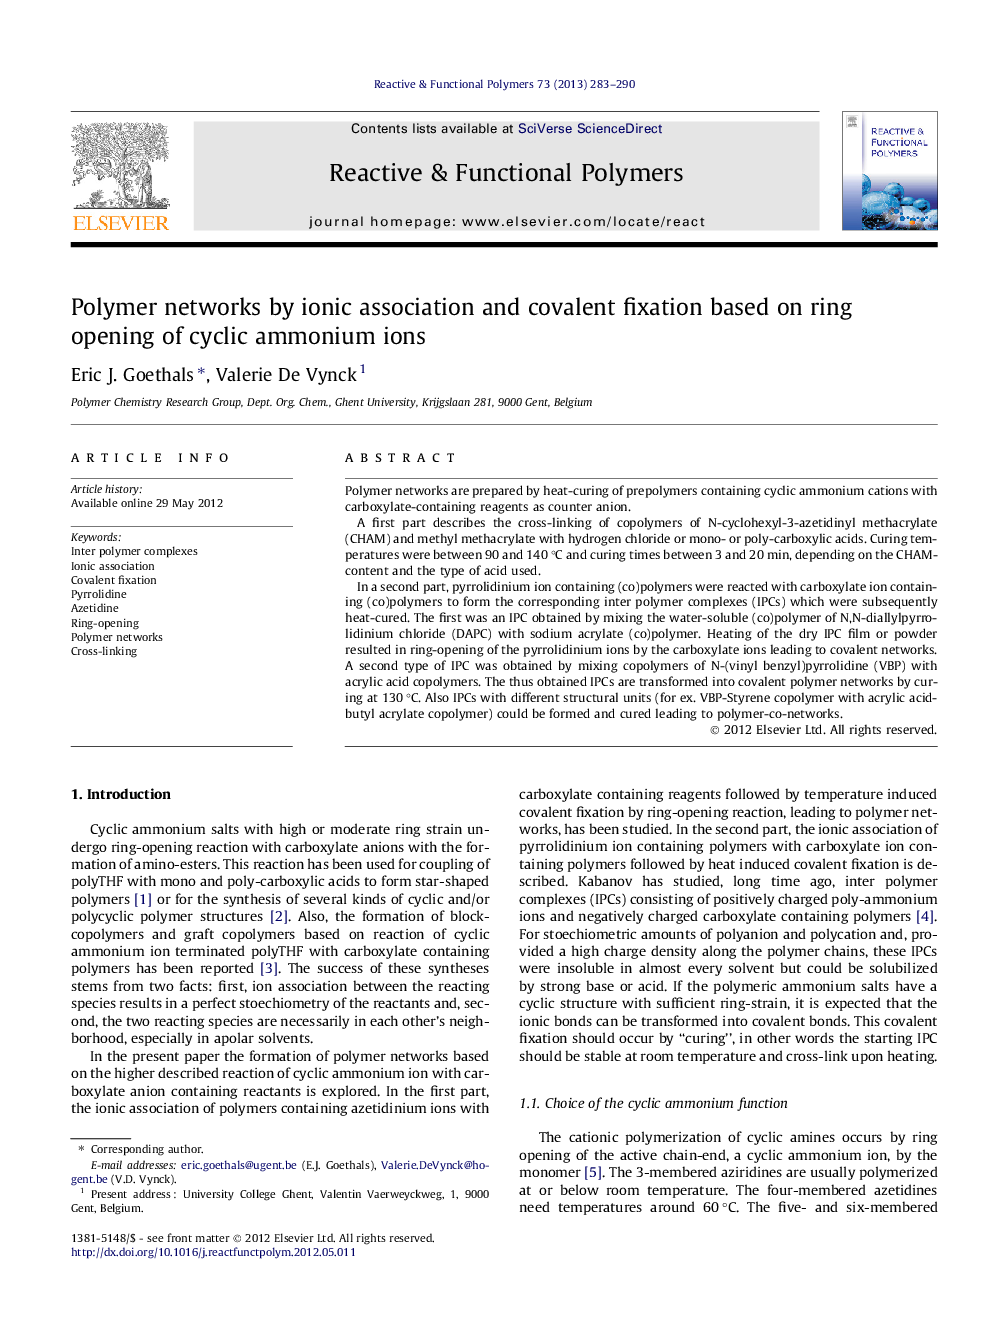 شبکه های پلیمری با استفاده از یونیک و فیکساسیون کووالانسی بر اساس باز شدن حلقه یون های آمونیوم سیکل 